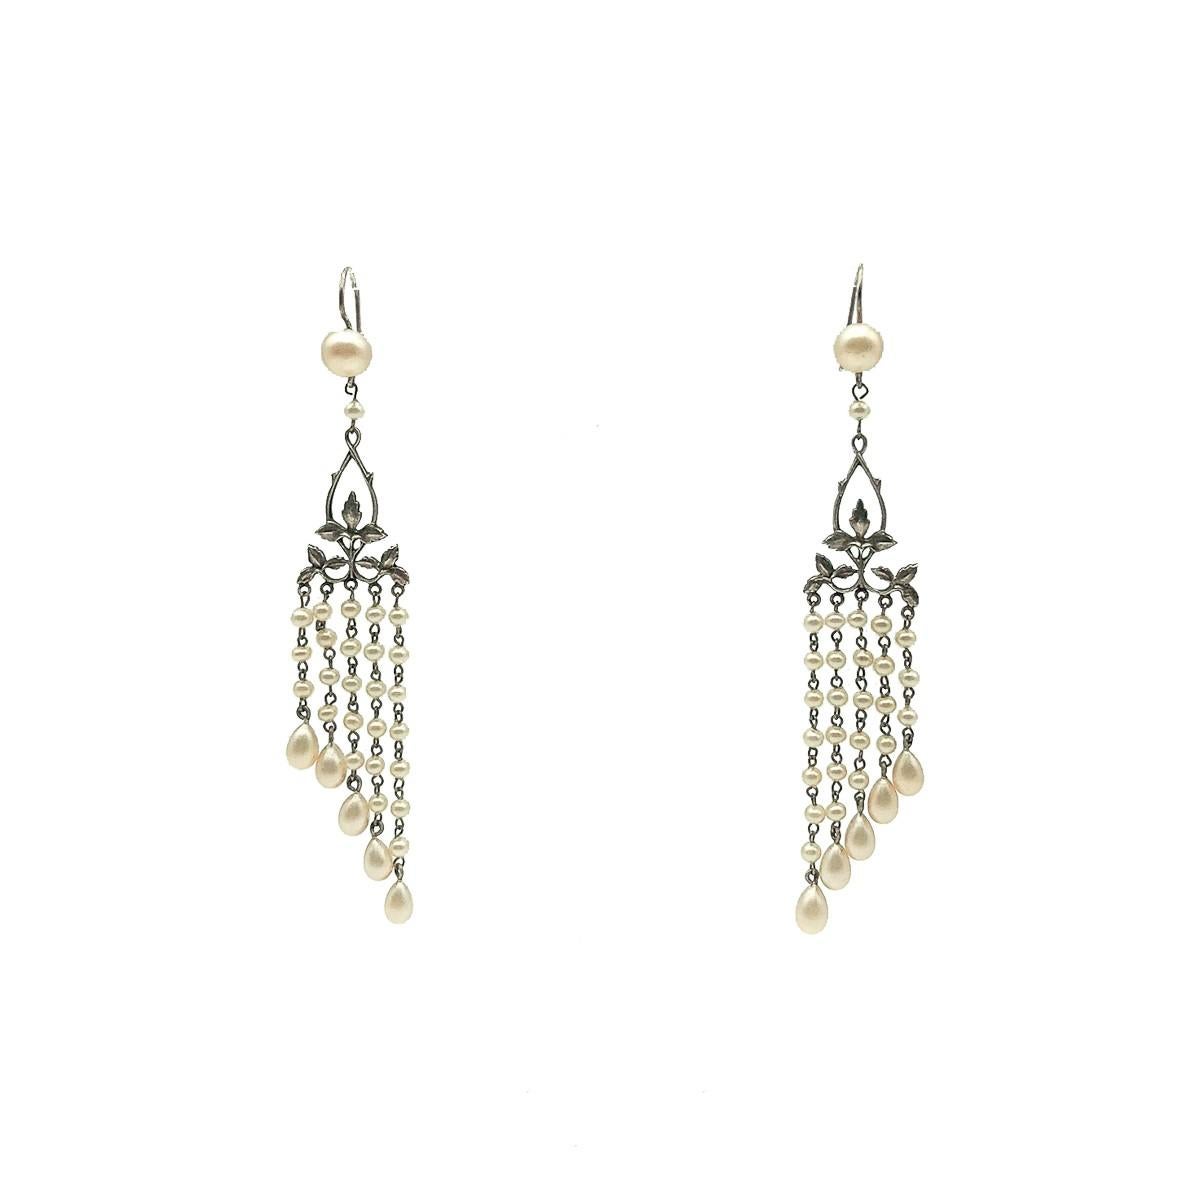 Ein seltenes Paar sehr eleganter antiker Perlenohrringe, die um 1920 entstanden sind. Das war zweifellos die Ära des langen Ohrrings, ein wichtiges Accessoire für die moderne Frau, die mit der Tradition brach, um ihren Flapper-Look zu kreieren.